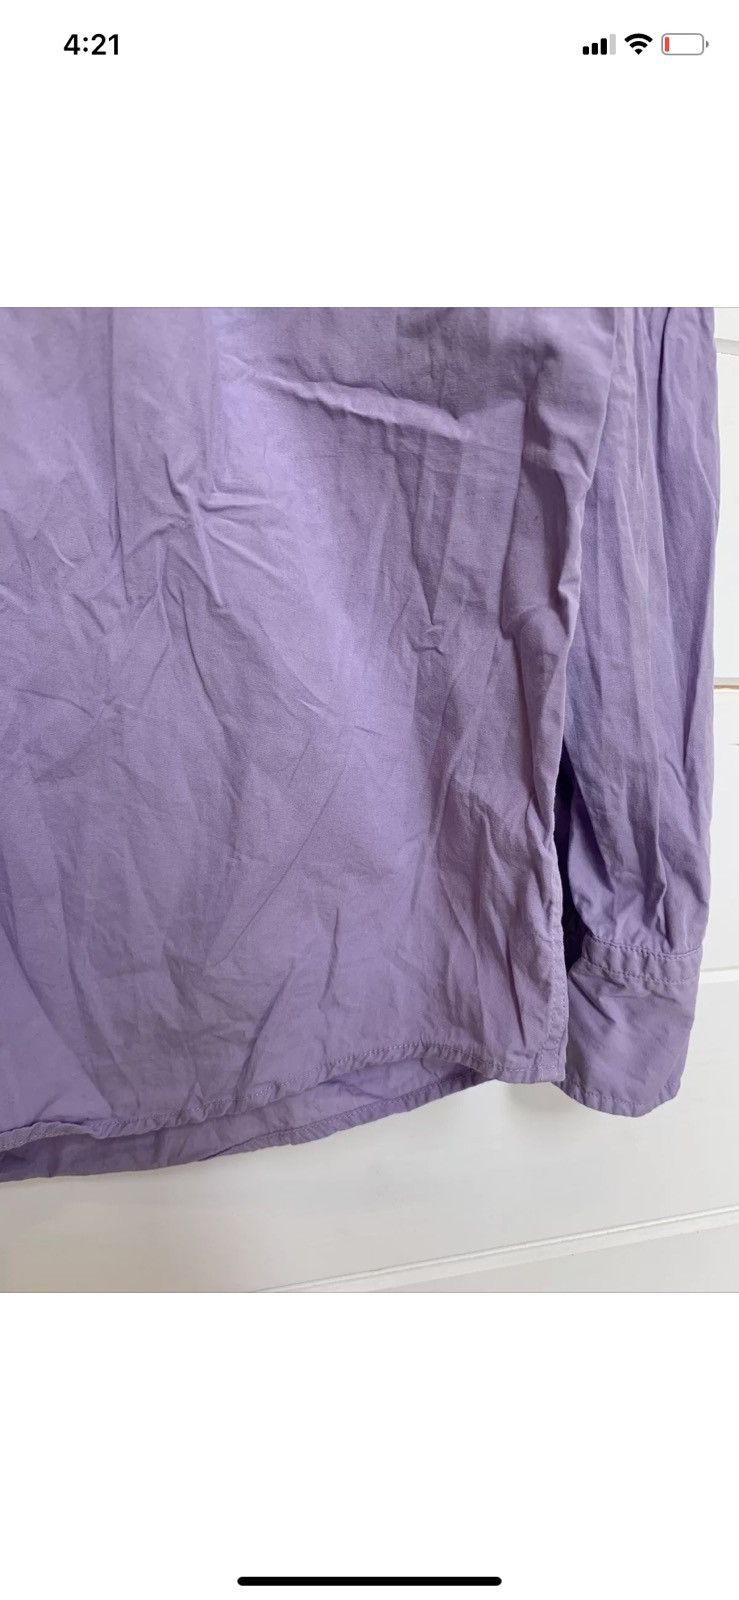 Gant GANT Shirt Purple Cotton Slim Fit Spectrum Poplin Size L Size US L / EU 52-54 / 3 - 3 Preview